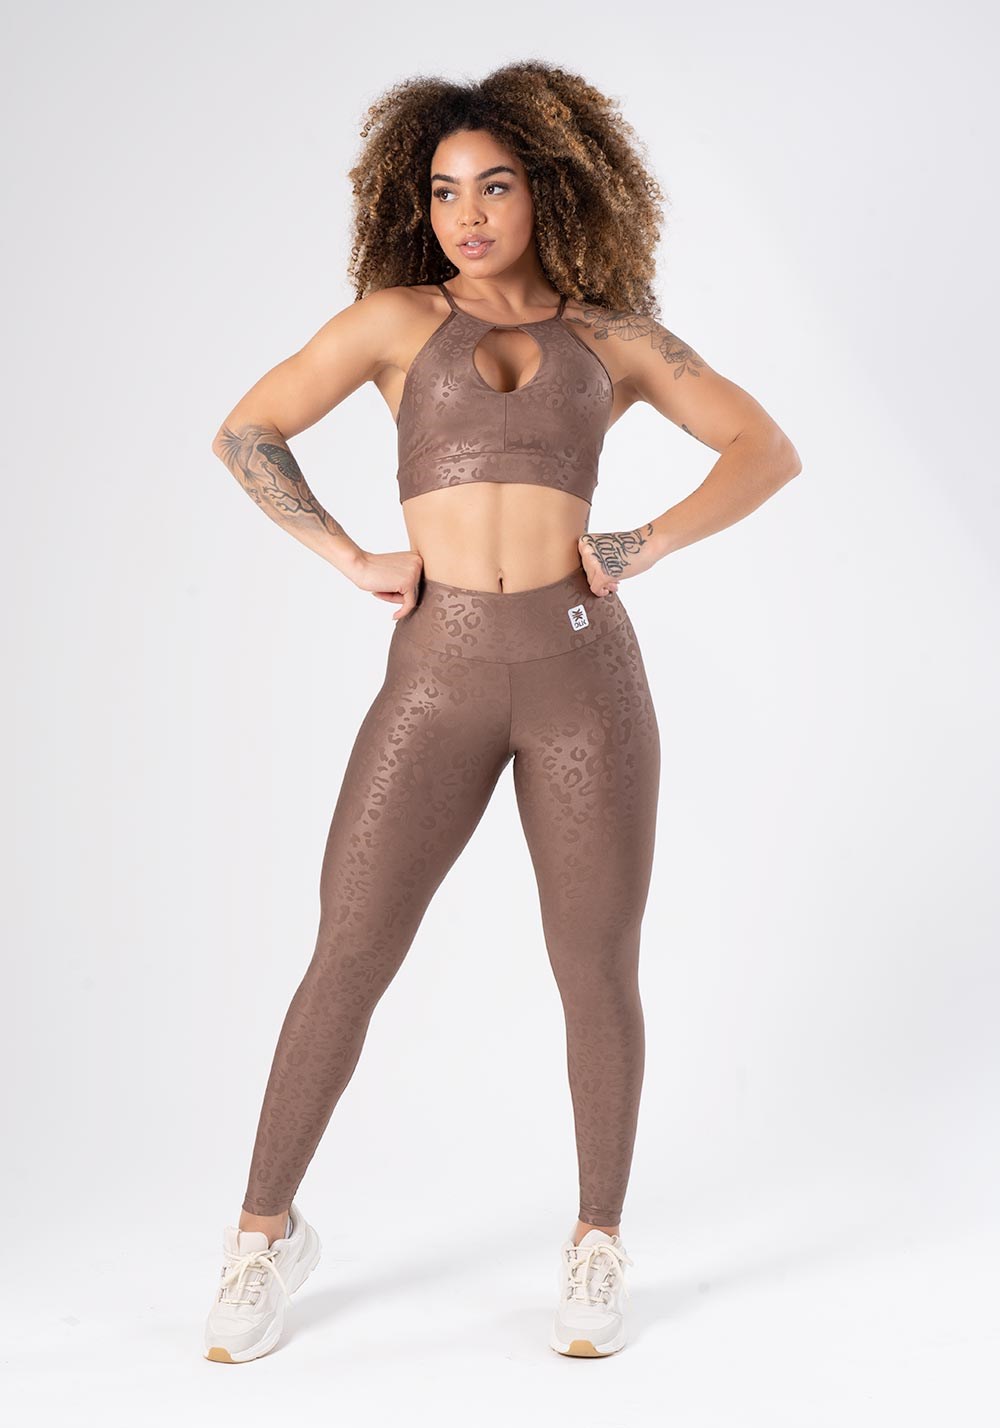 calca legging feminina textura cobre-marrom modela e conforto para seus  treinos